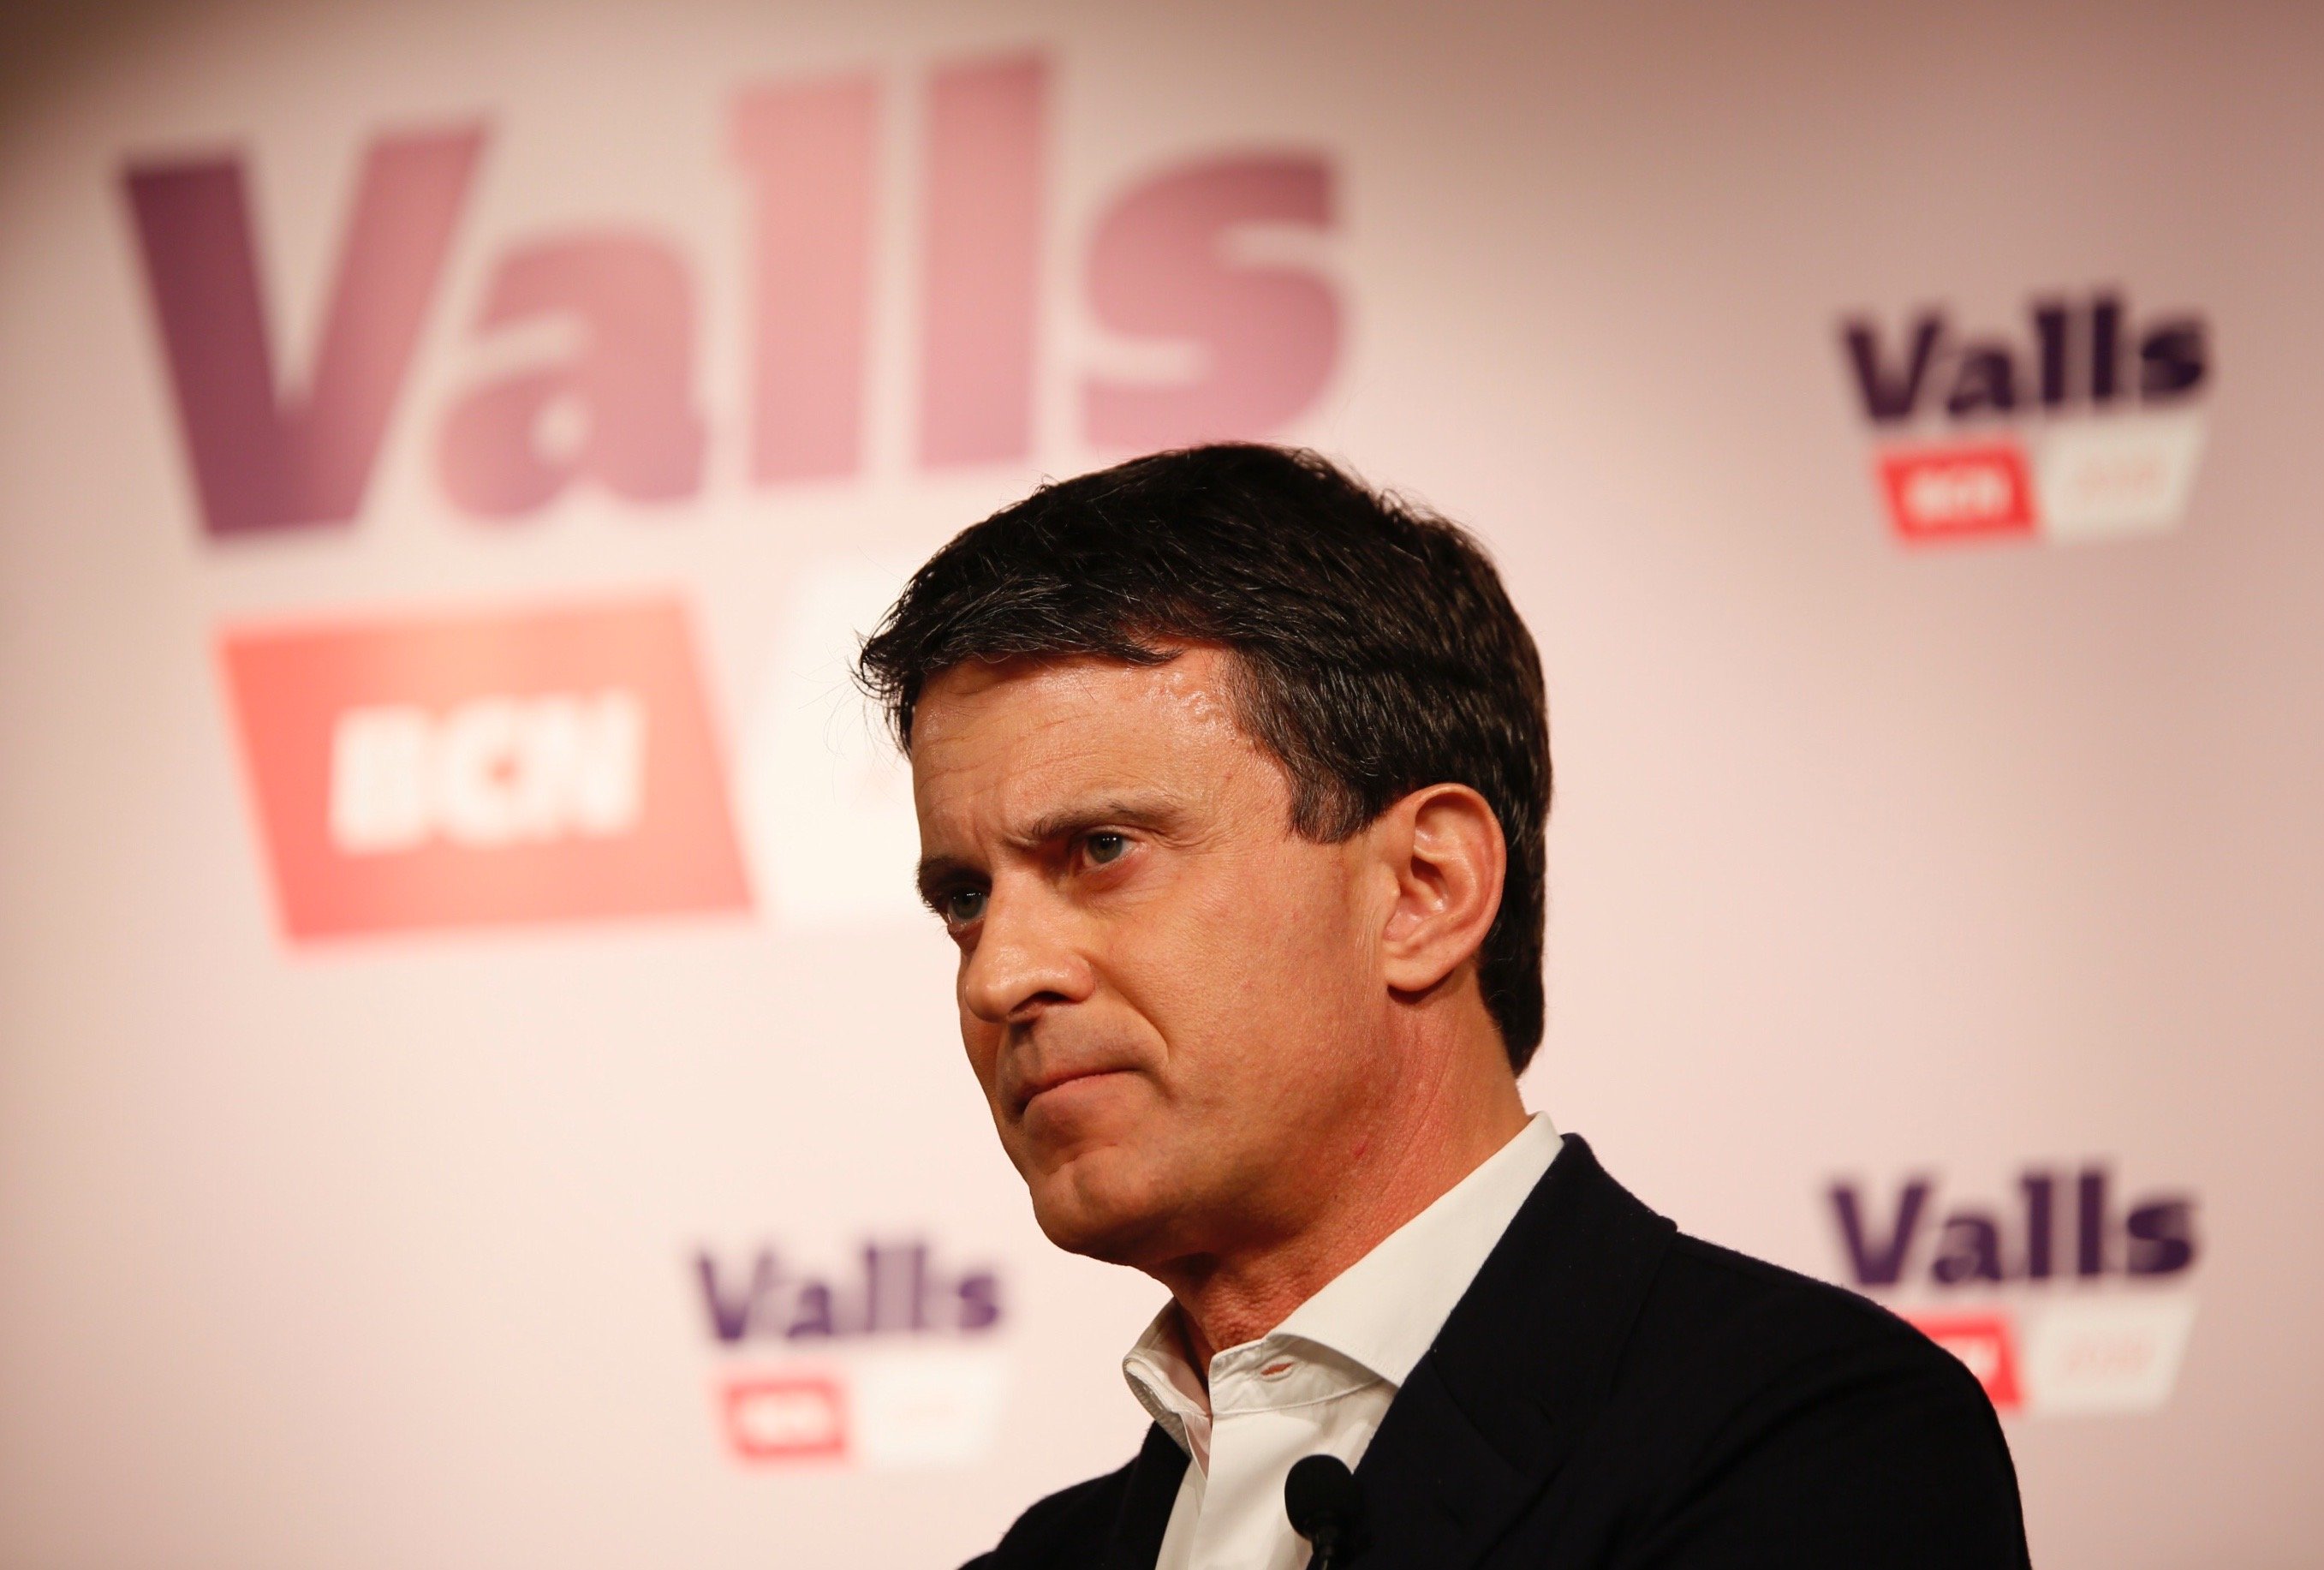 Valls descalifica a los diputados franceses solidarios con los presos